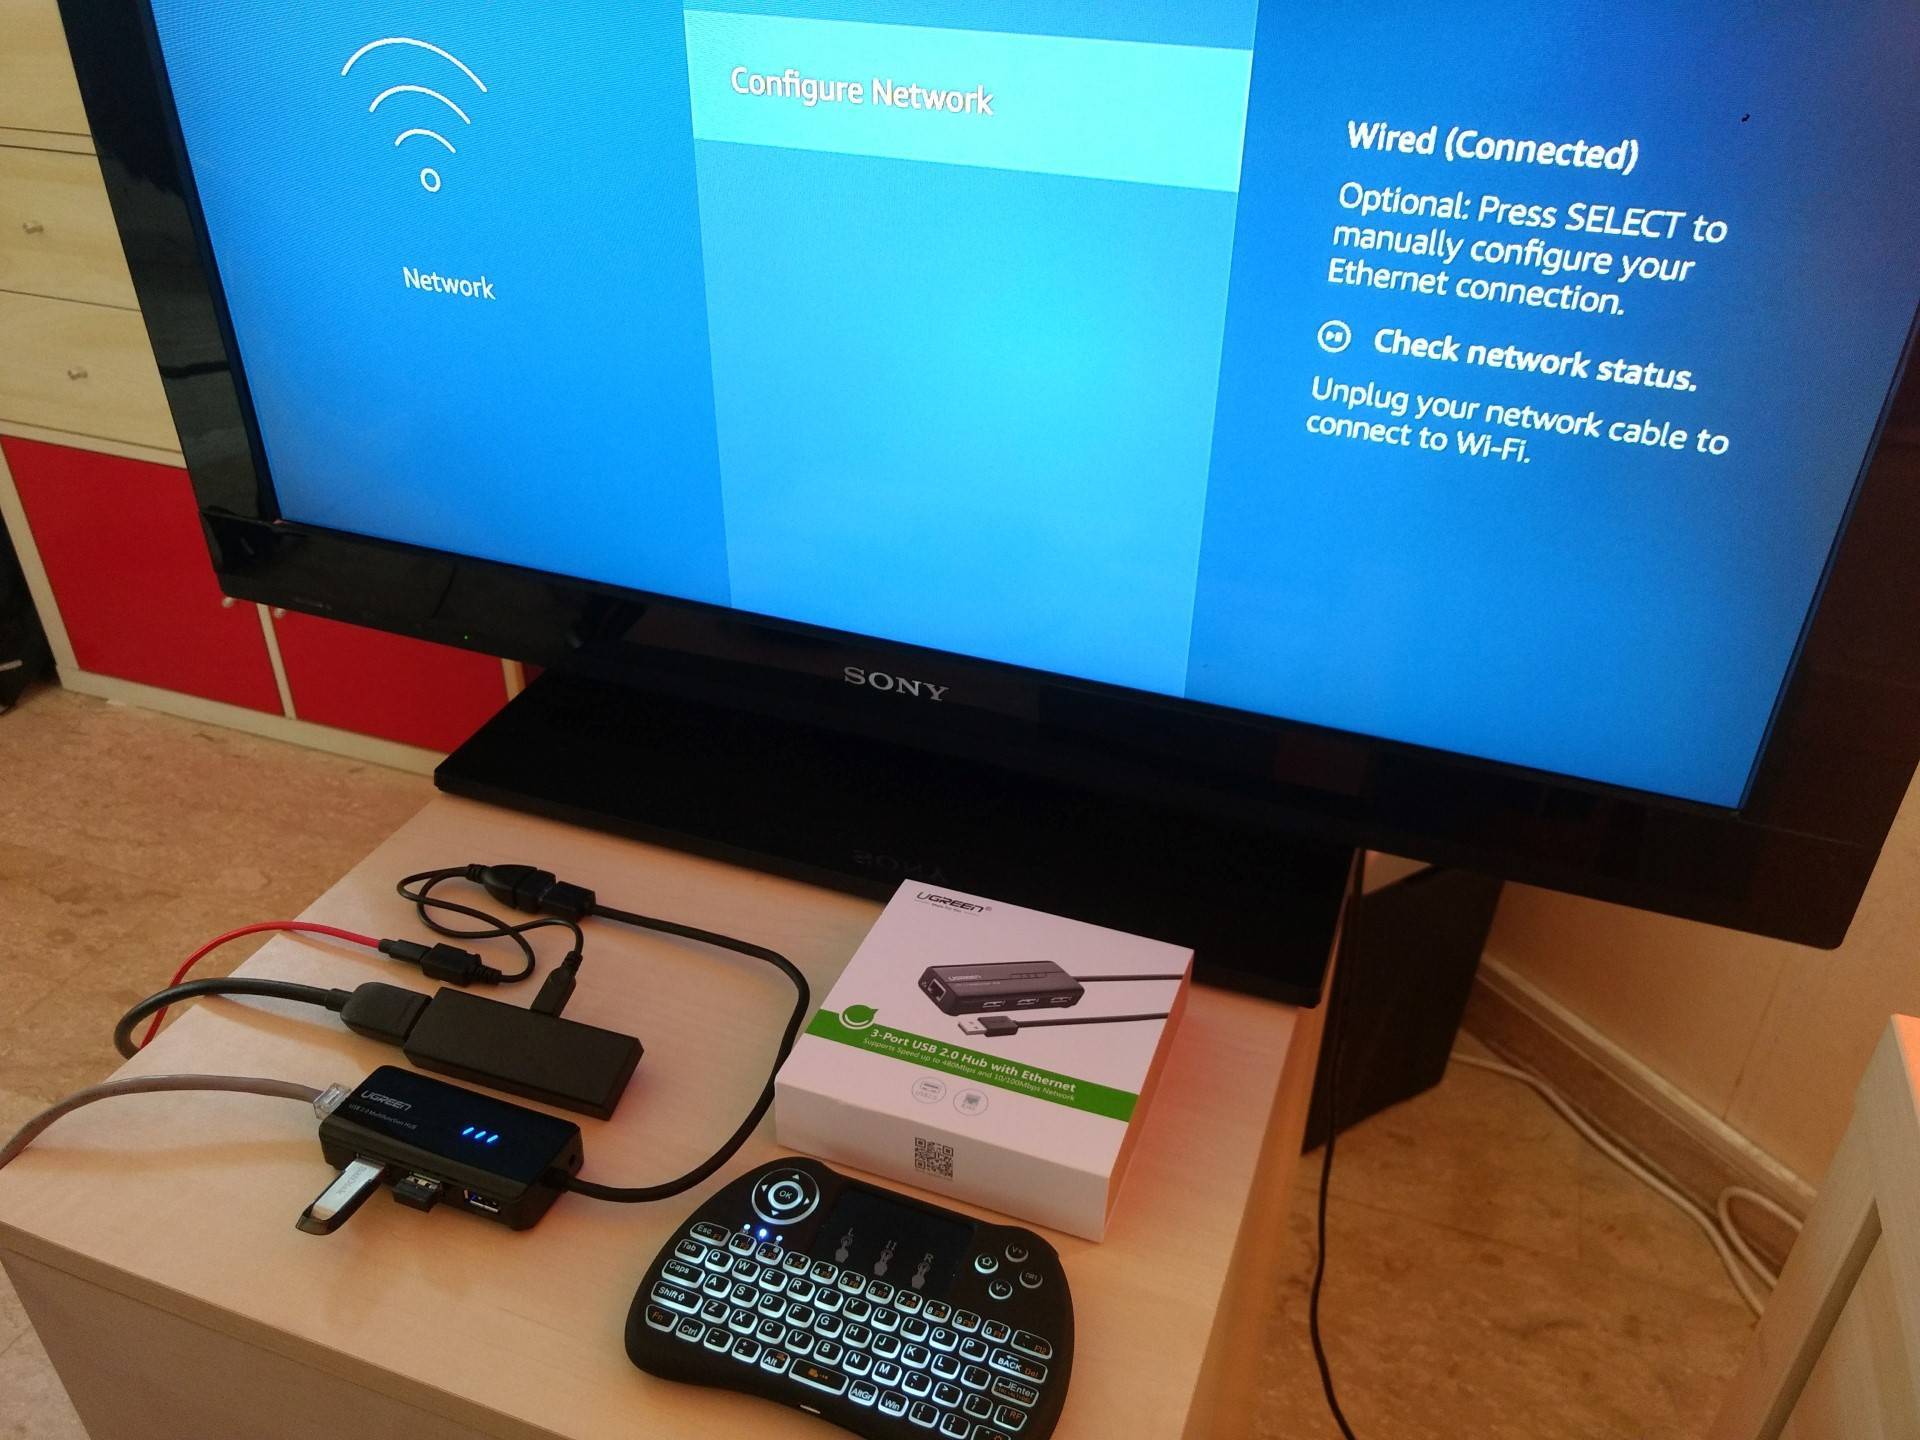 Как подключить клавиатуру и мышь к телевизору samsung smart tv